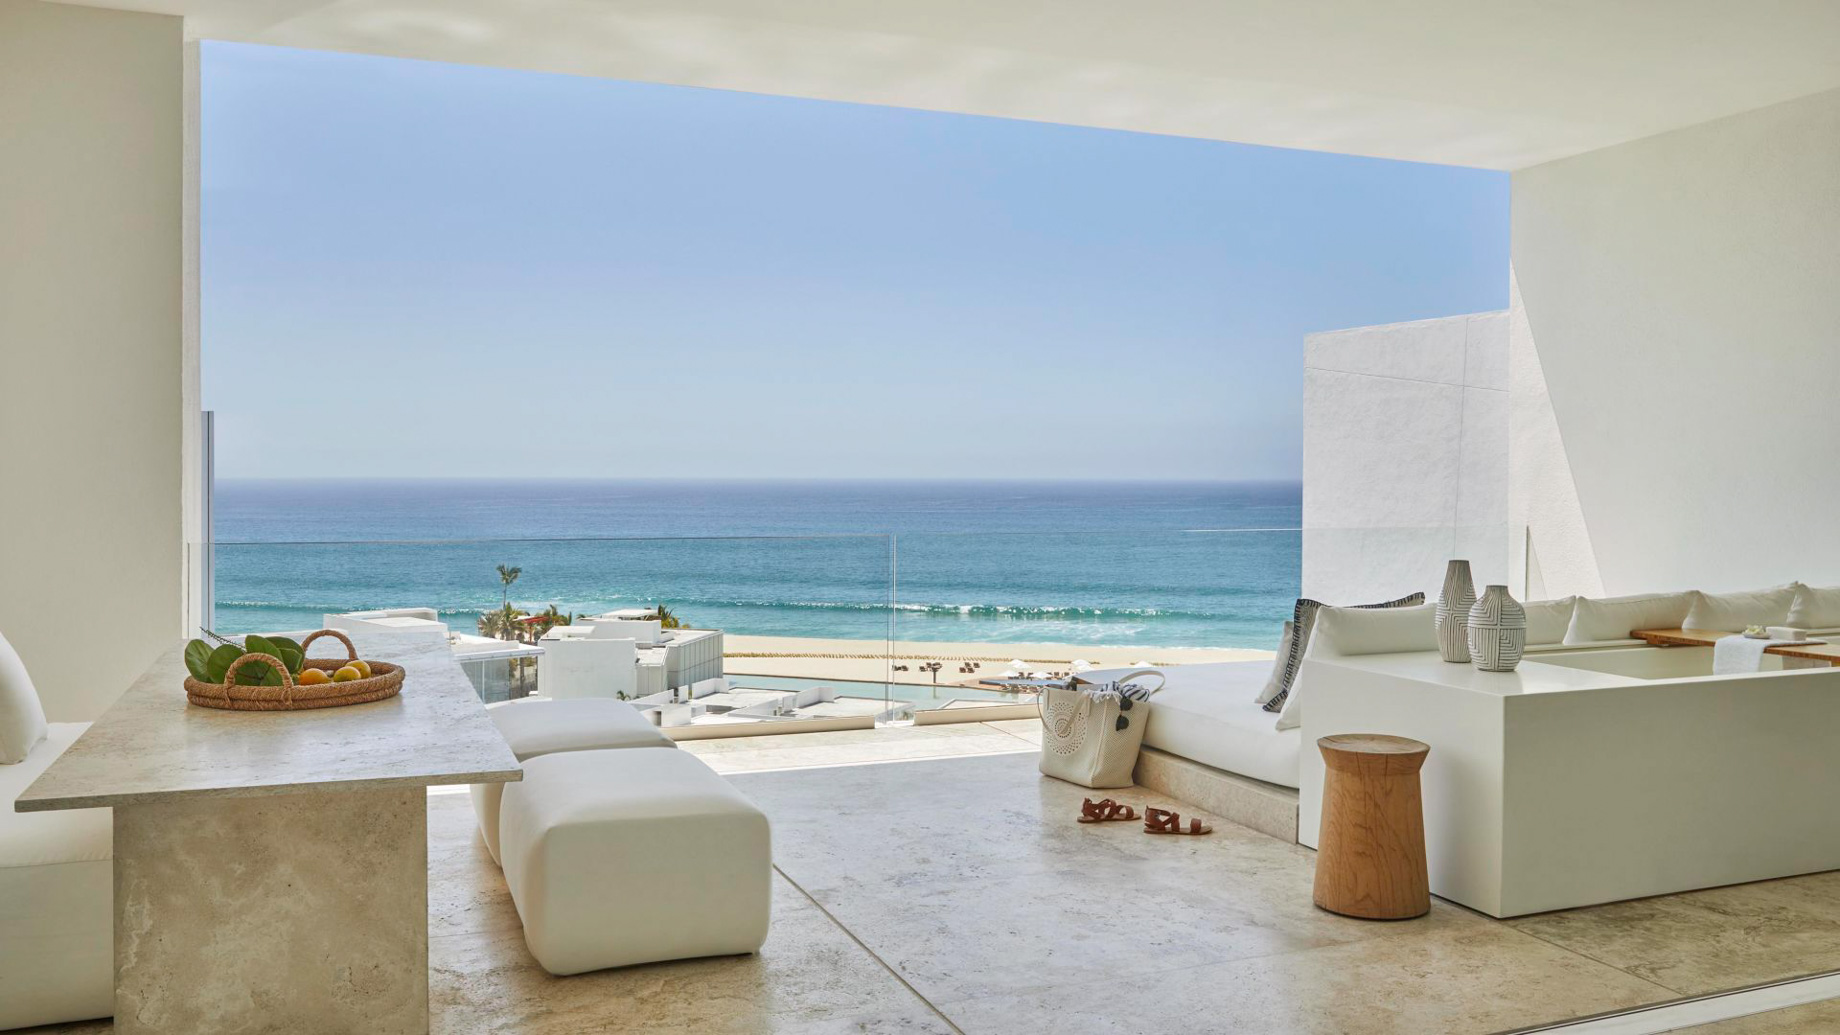 Viceroy Los Cabos Resort - San José del Cabo, Mexico - Ocean View Two Bedroom Suite Balcony